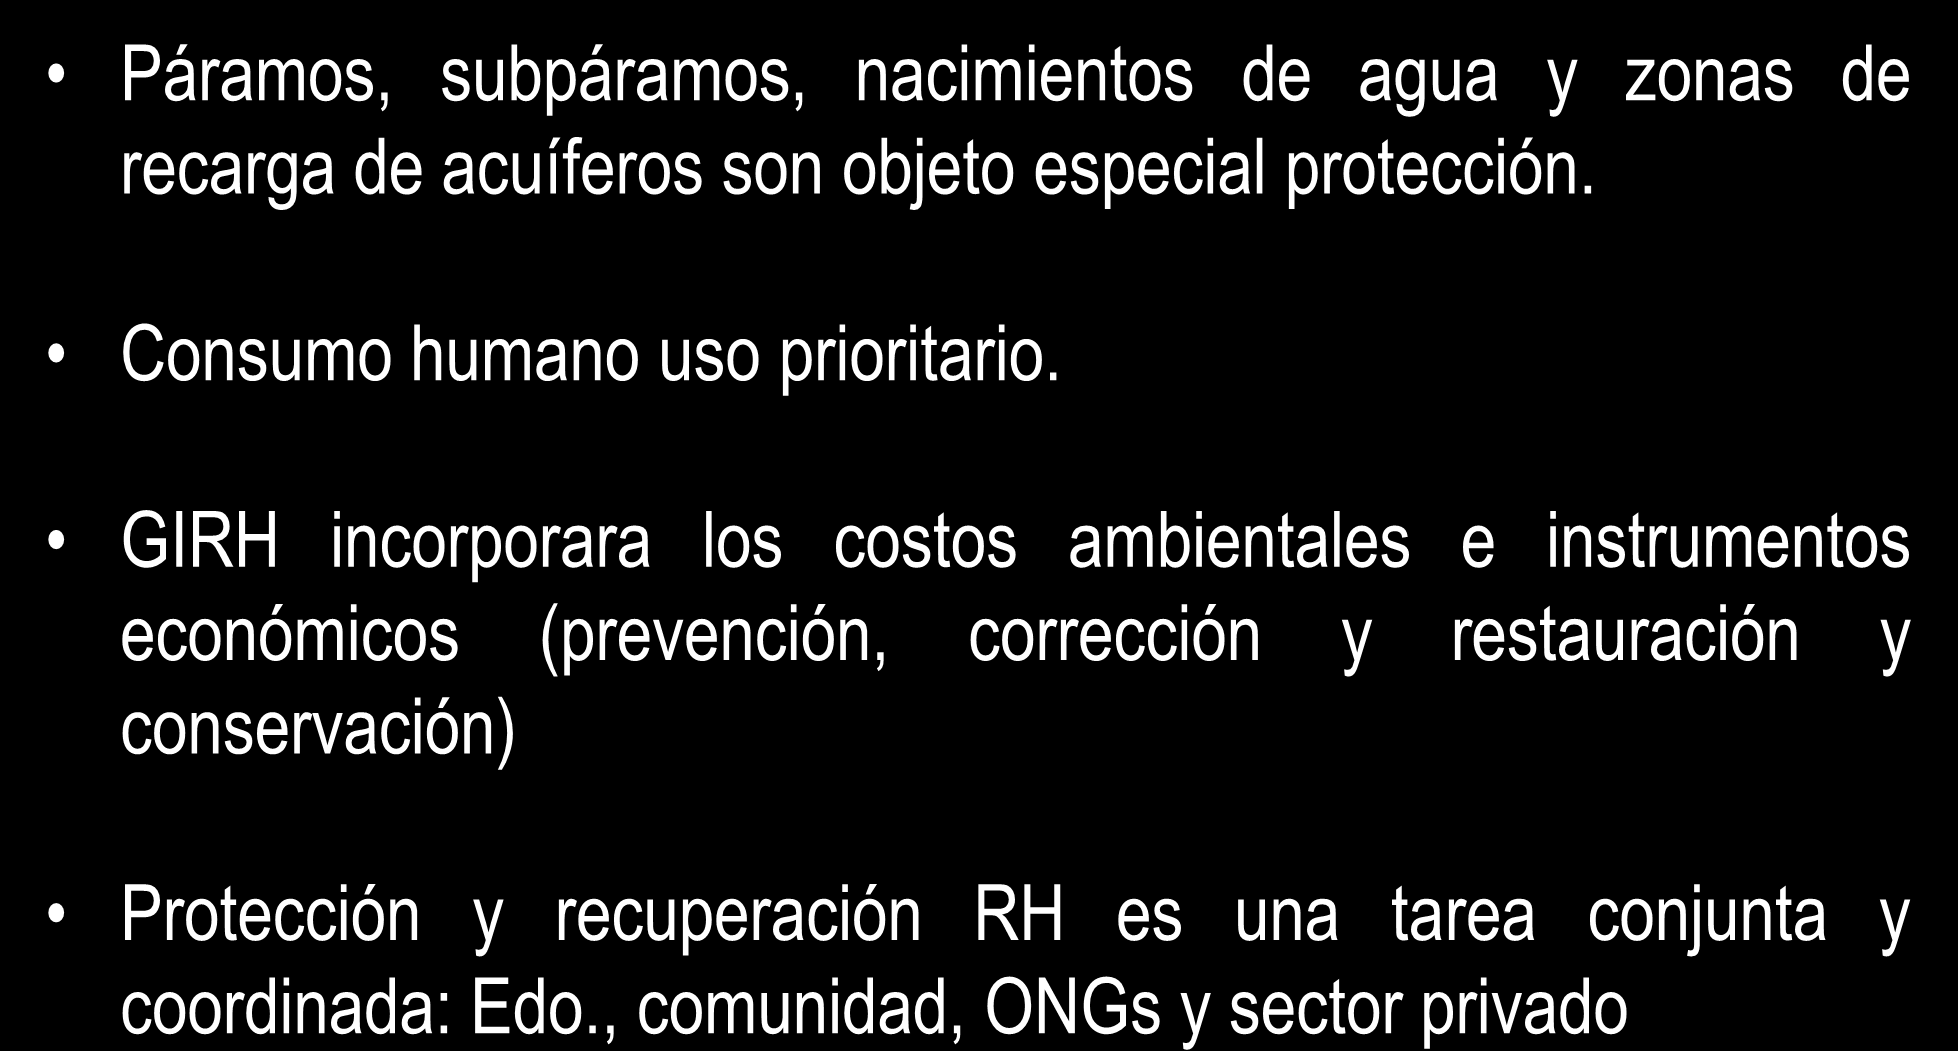 PRINCIPIOS LEY 99/93: GIRH Páramos, subpáramos, nacimientos de agua y zonas de recarga de acuíferos son objeto especial protección. Consumo humano uso prioritario.